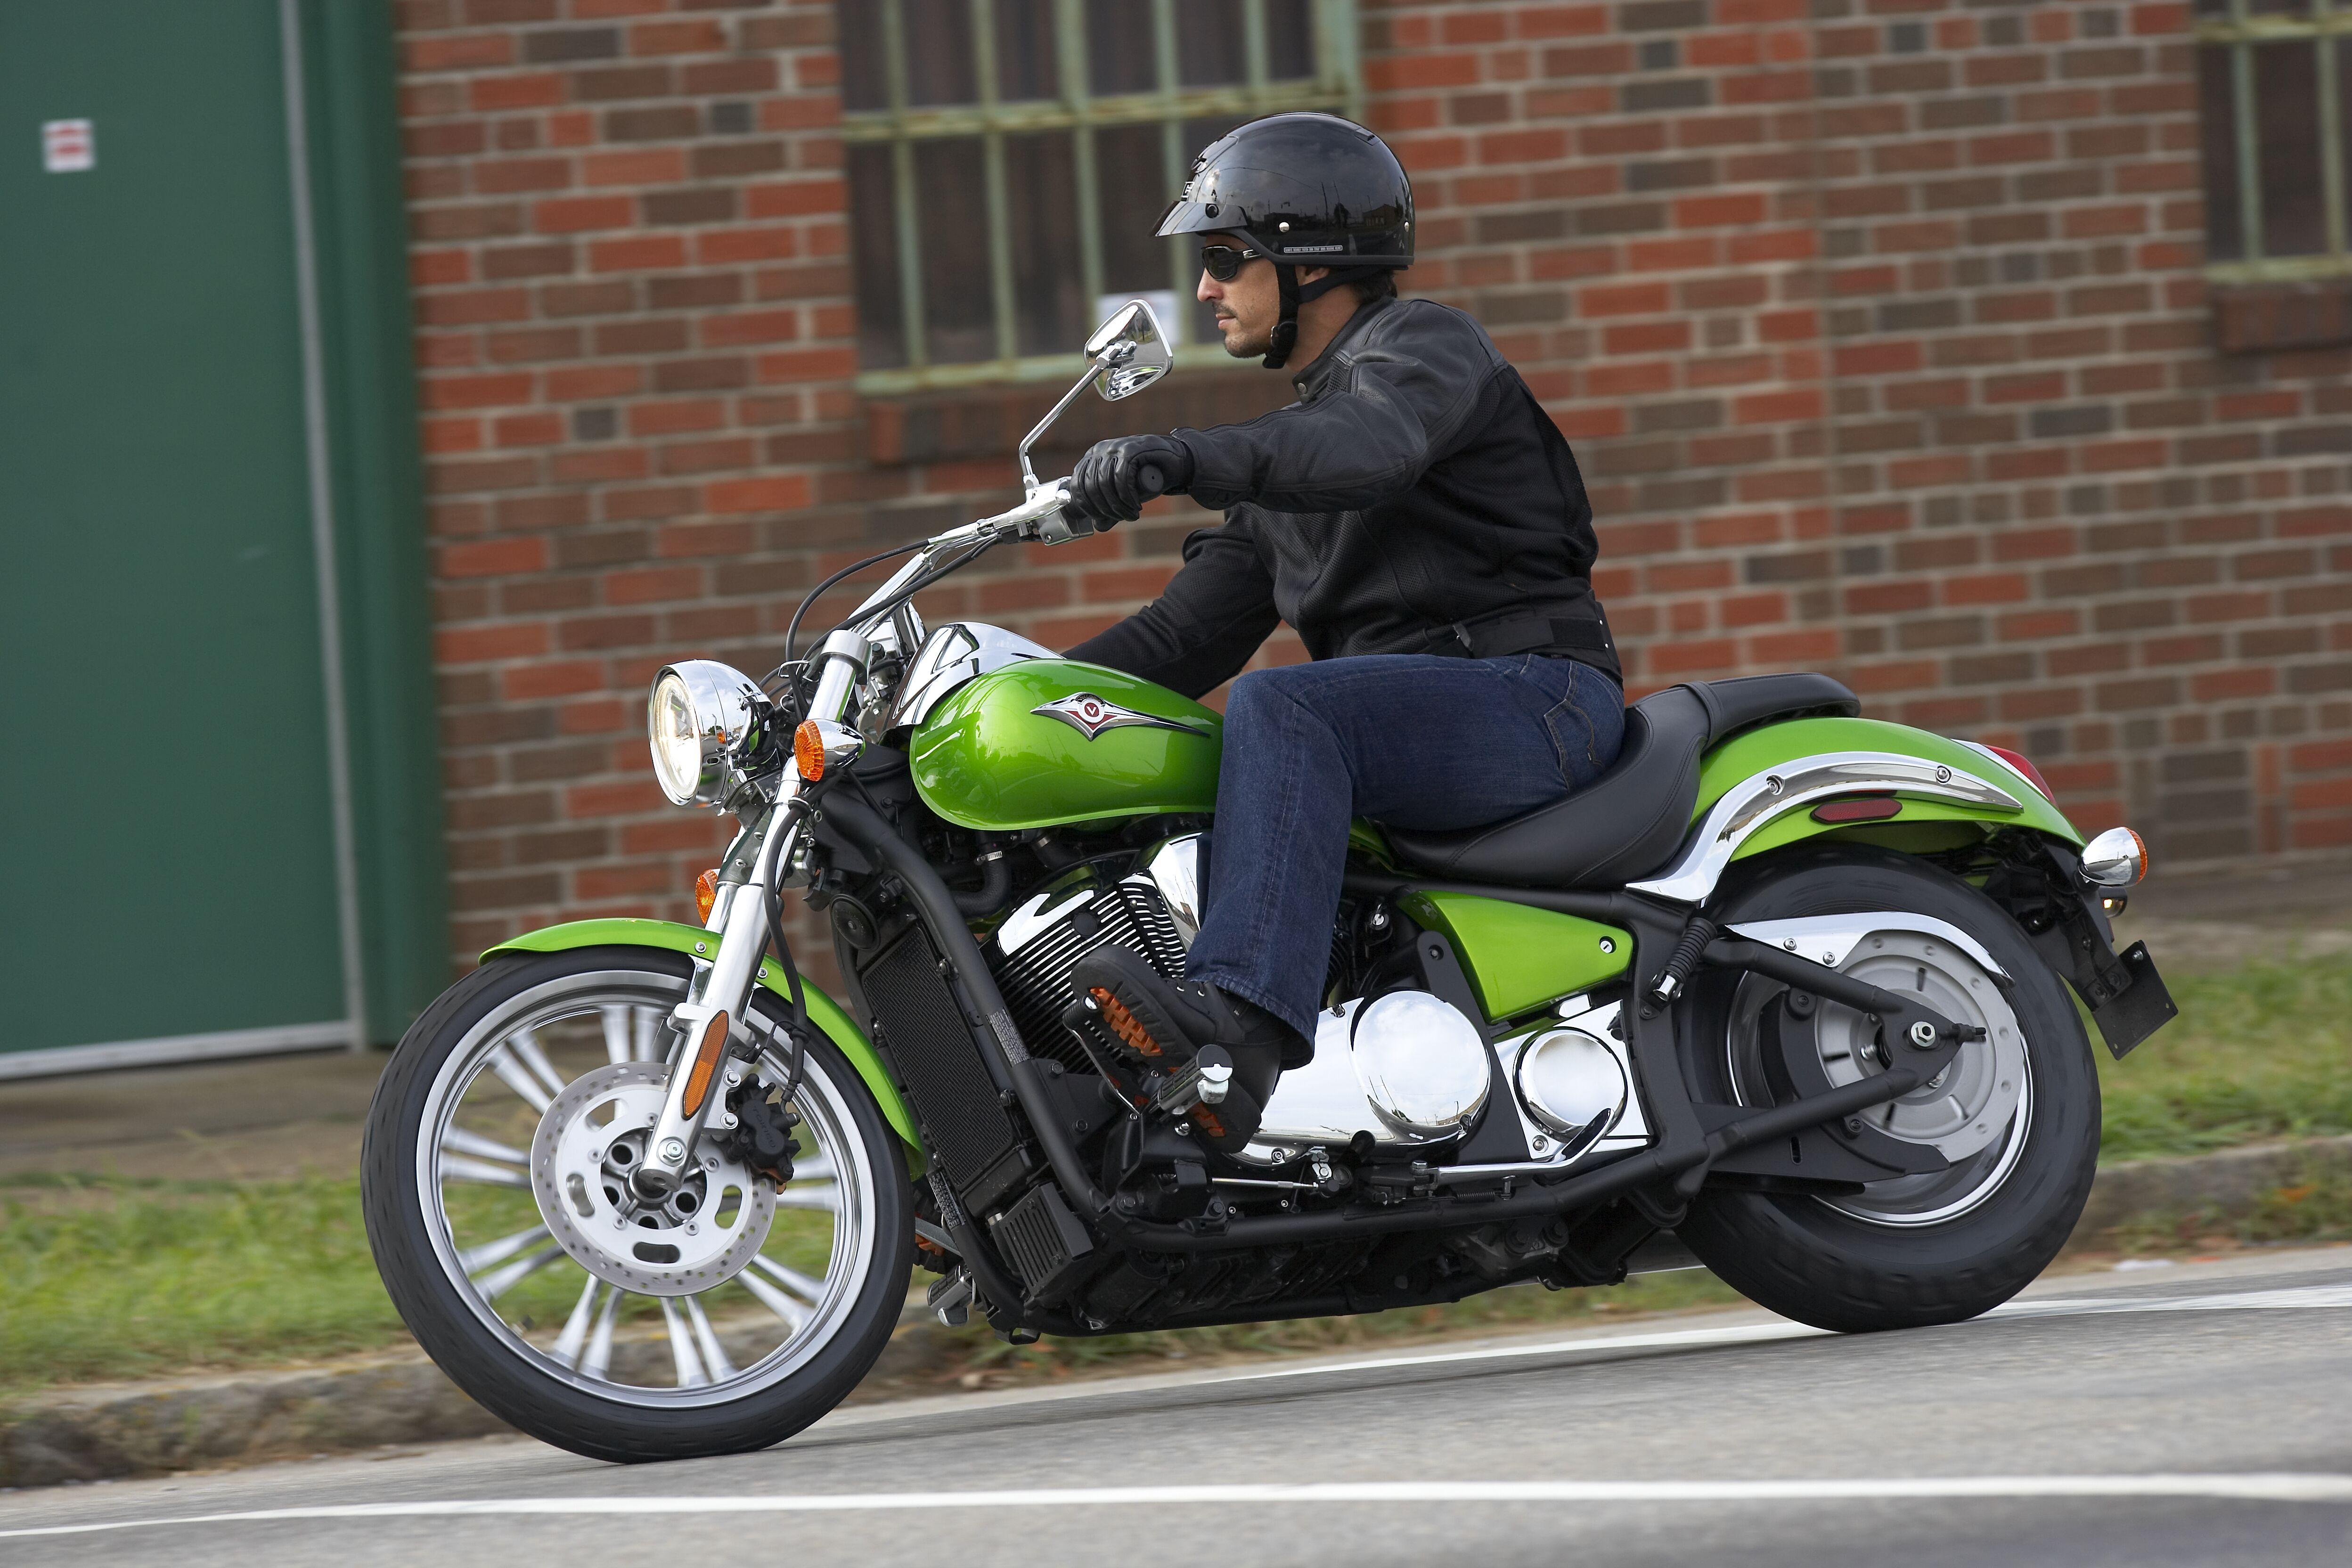 Shiny green motorcycle photo